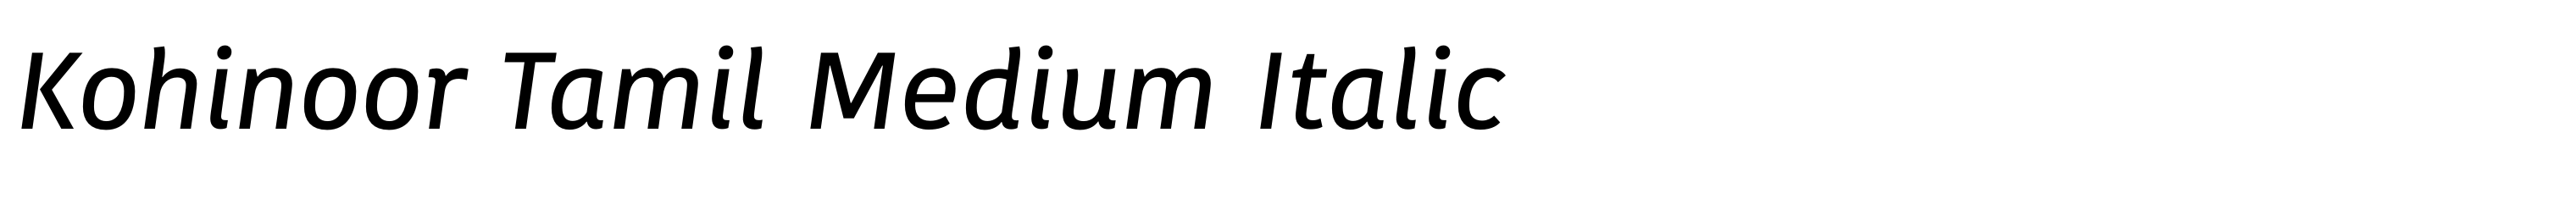 Kohinoor Tamil Medium Italic